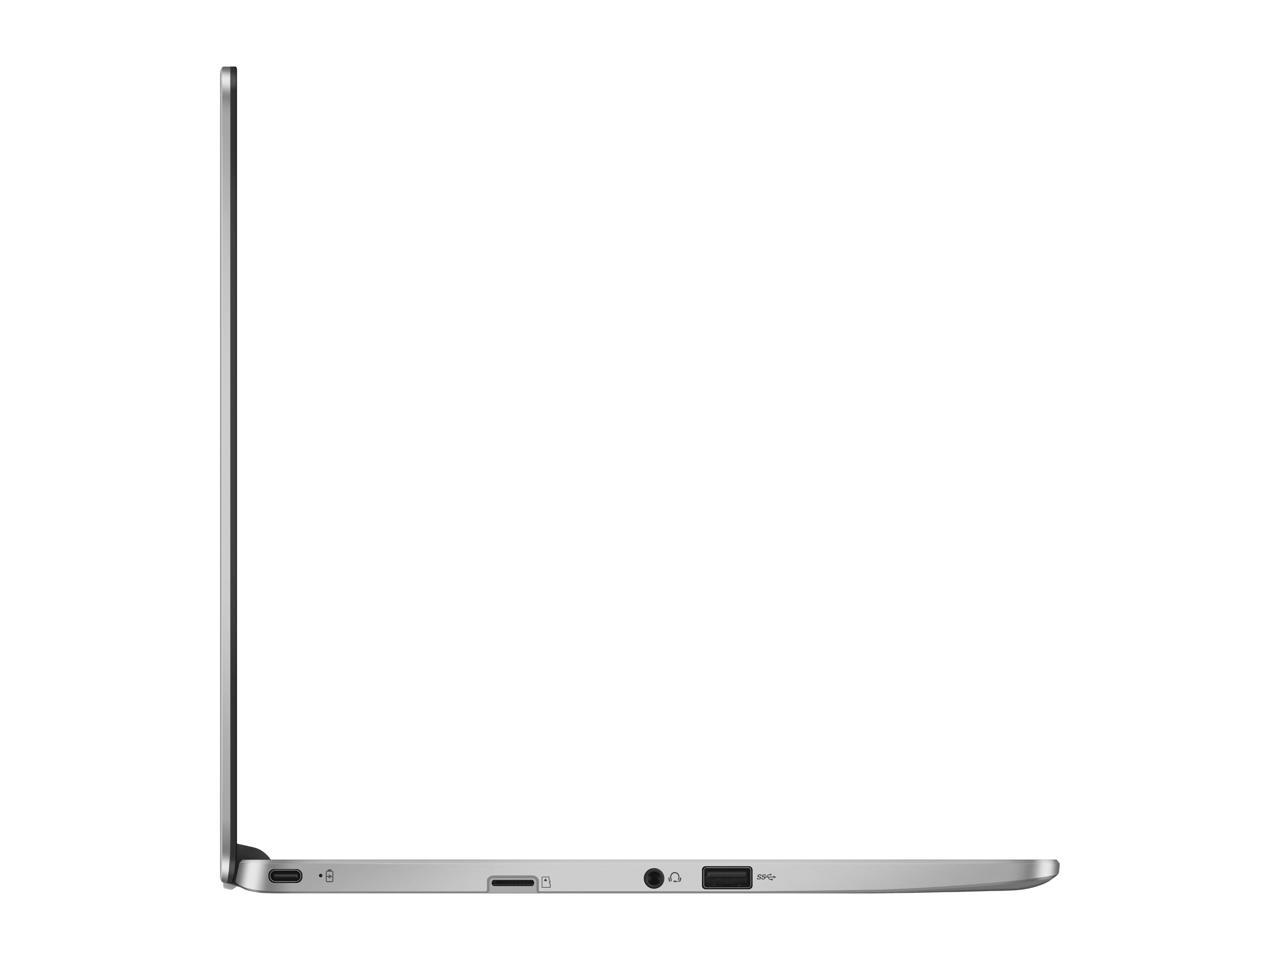 ASUS Chromebook C523NA-DH02 15.6" HD NanoEdge Display with 180 Degree